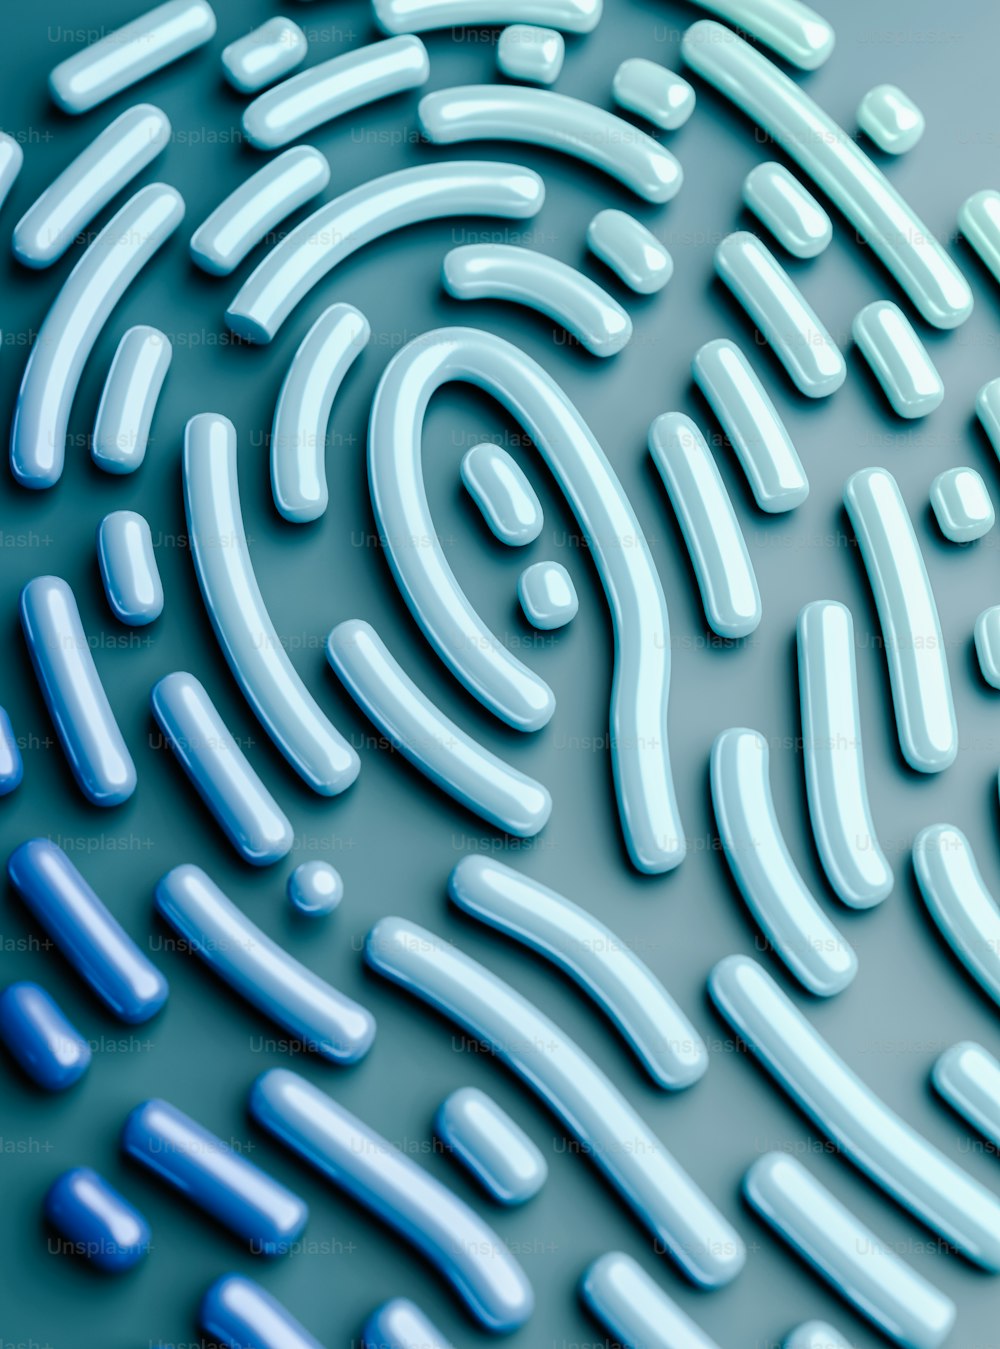 um close up de uma impressão digital em uma superfície azul